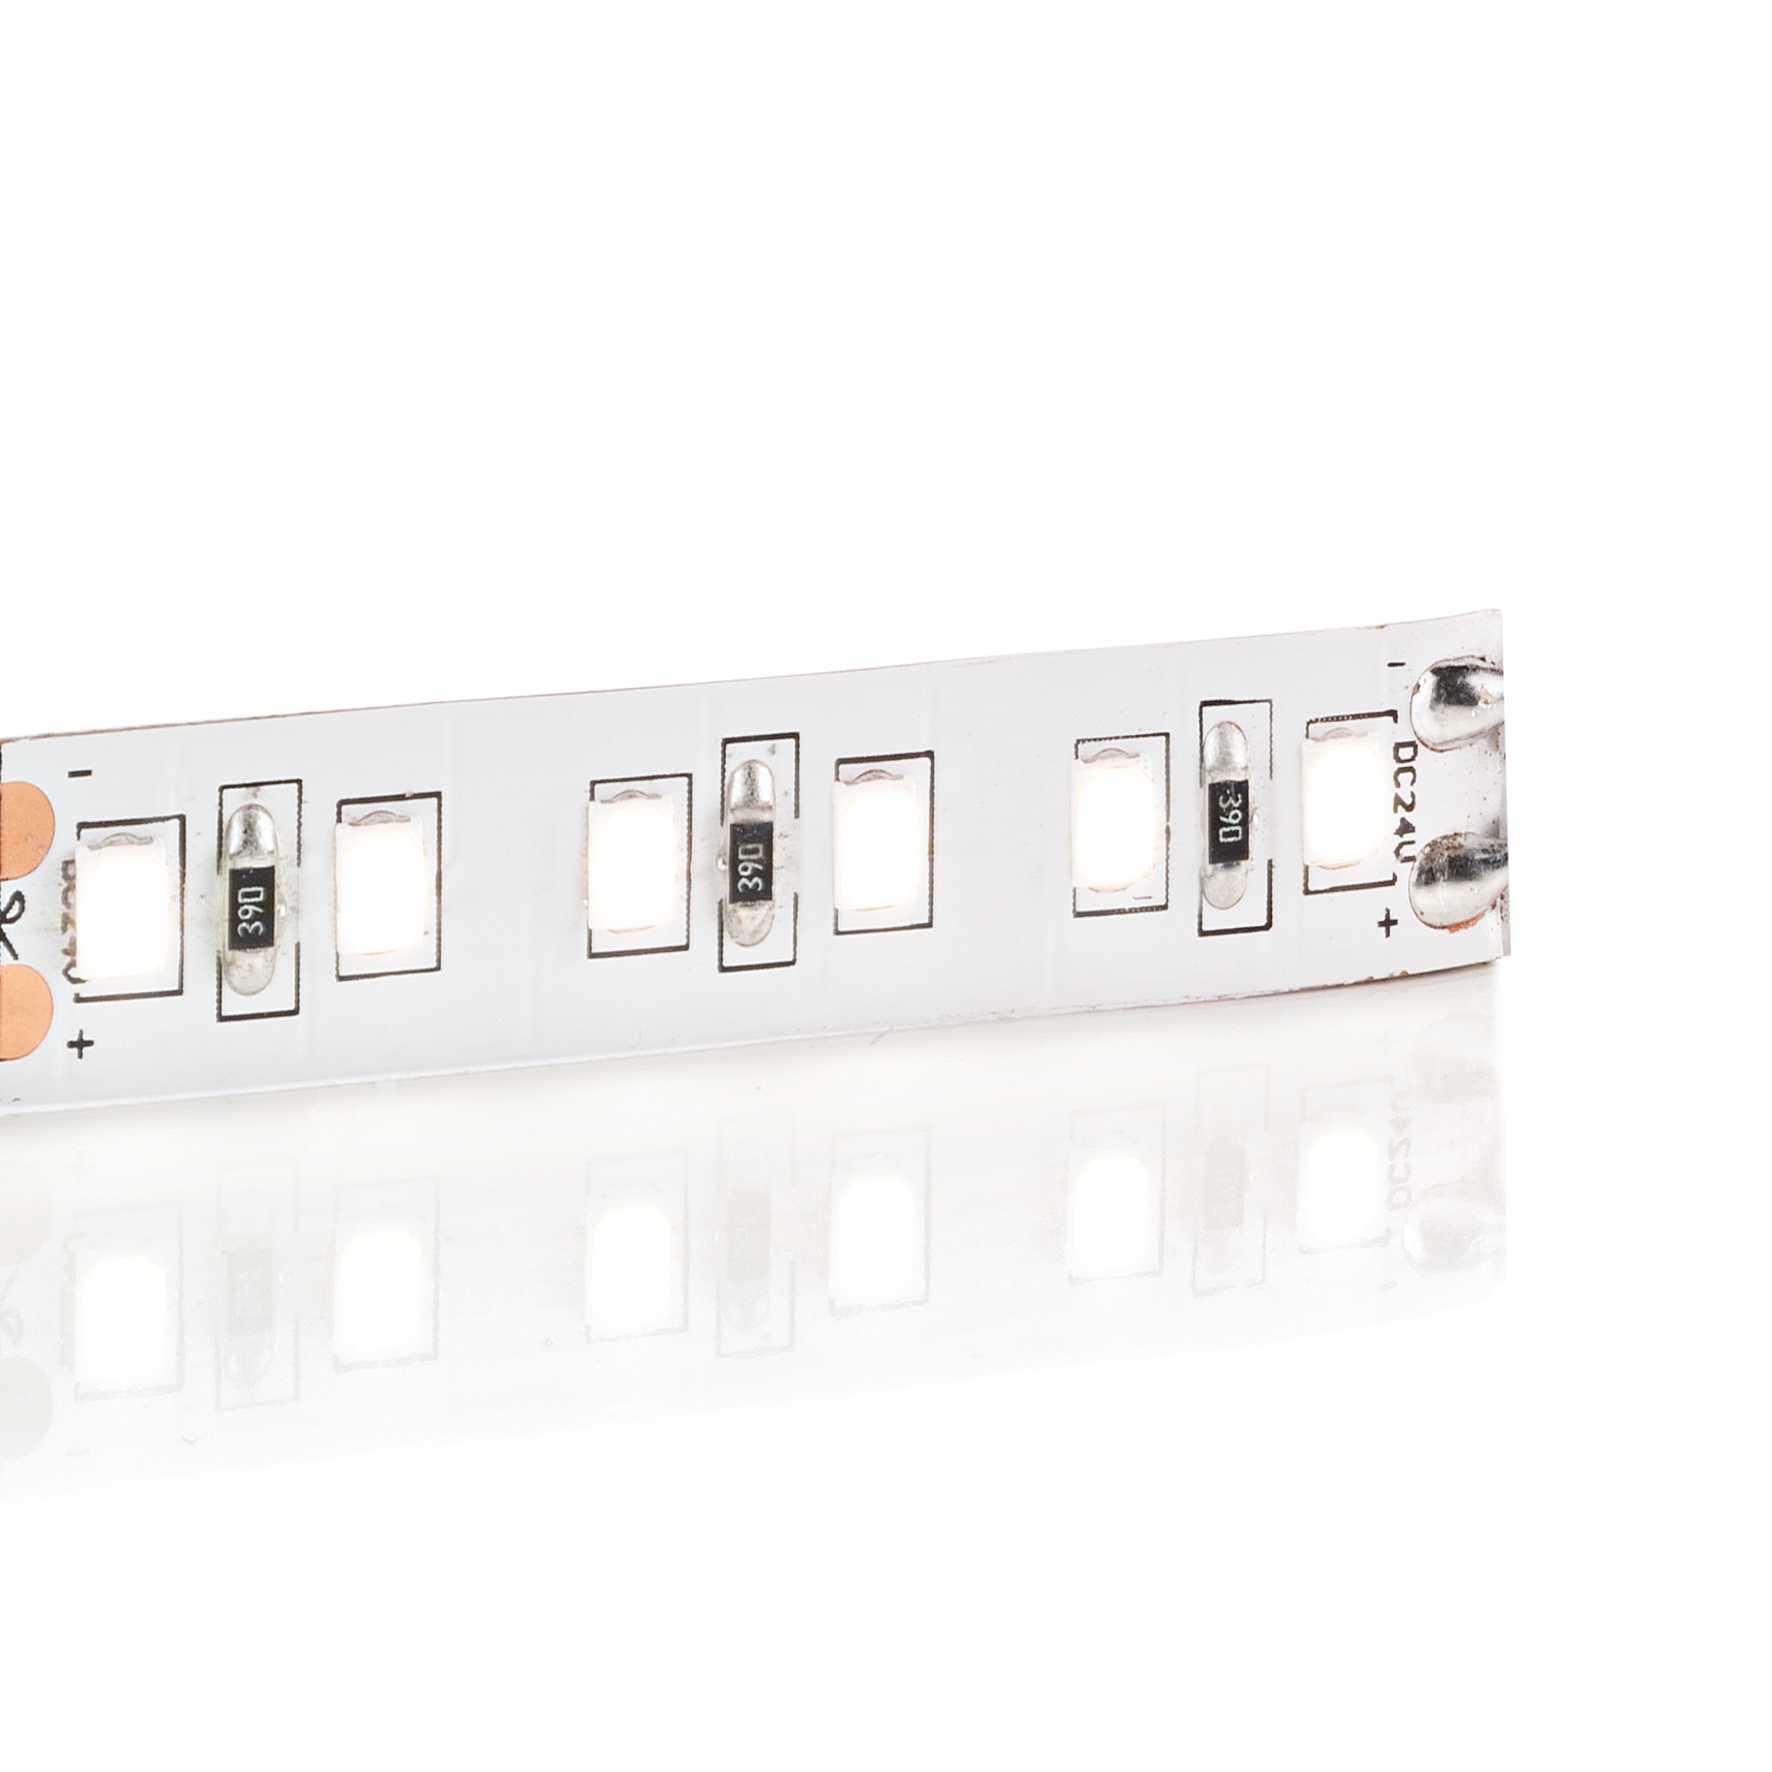 Banda 5 metri STRIP LED 39W 3000K CRI90 180 LED/m IP20, Iluminat LED pentru mobila de bucatarie⭐ modele aplice potrivite pentru iluminat blat mobiler.✅Design functional unic!❤️Promotii lampi❗ ➽ www.evalight.ro. Alege corpuri de iluminat pentru mobila de bucatarie cu profil LED, spot de tip aplicat sau incorporat in mobilier, ieftine si de lux, calitate deosebita la cel mai bun pret.
 a